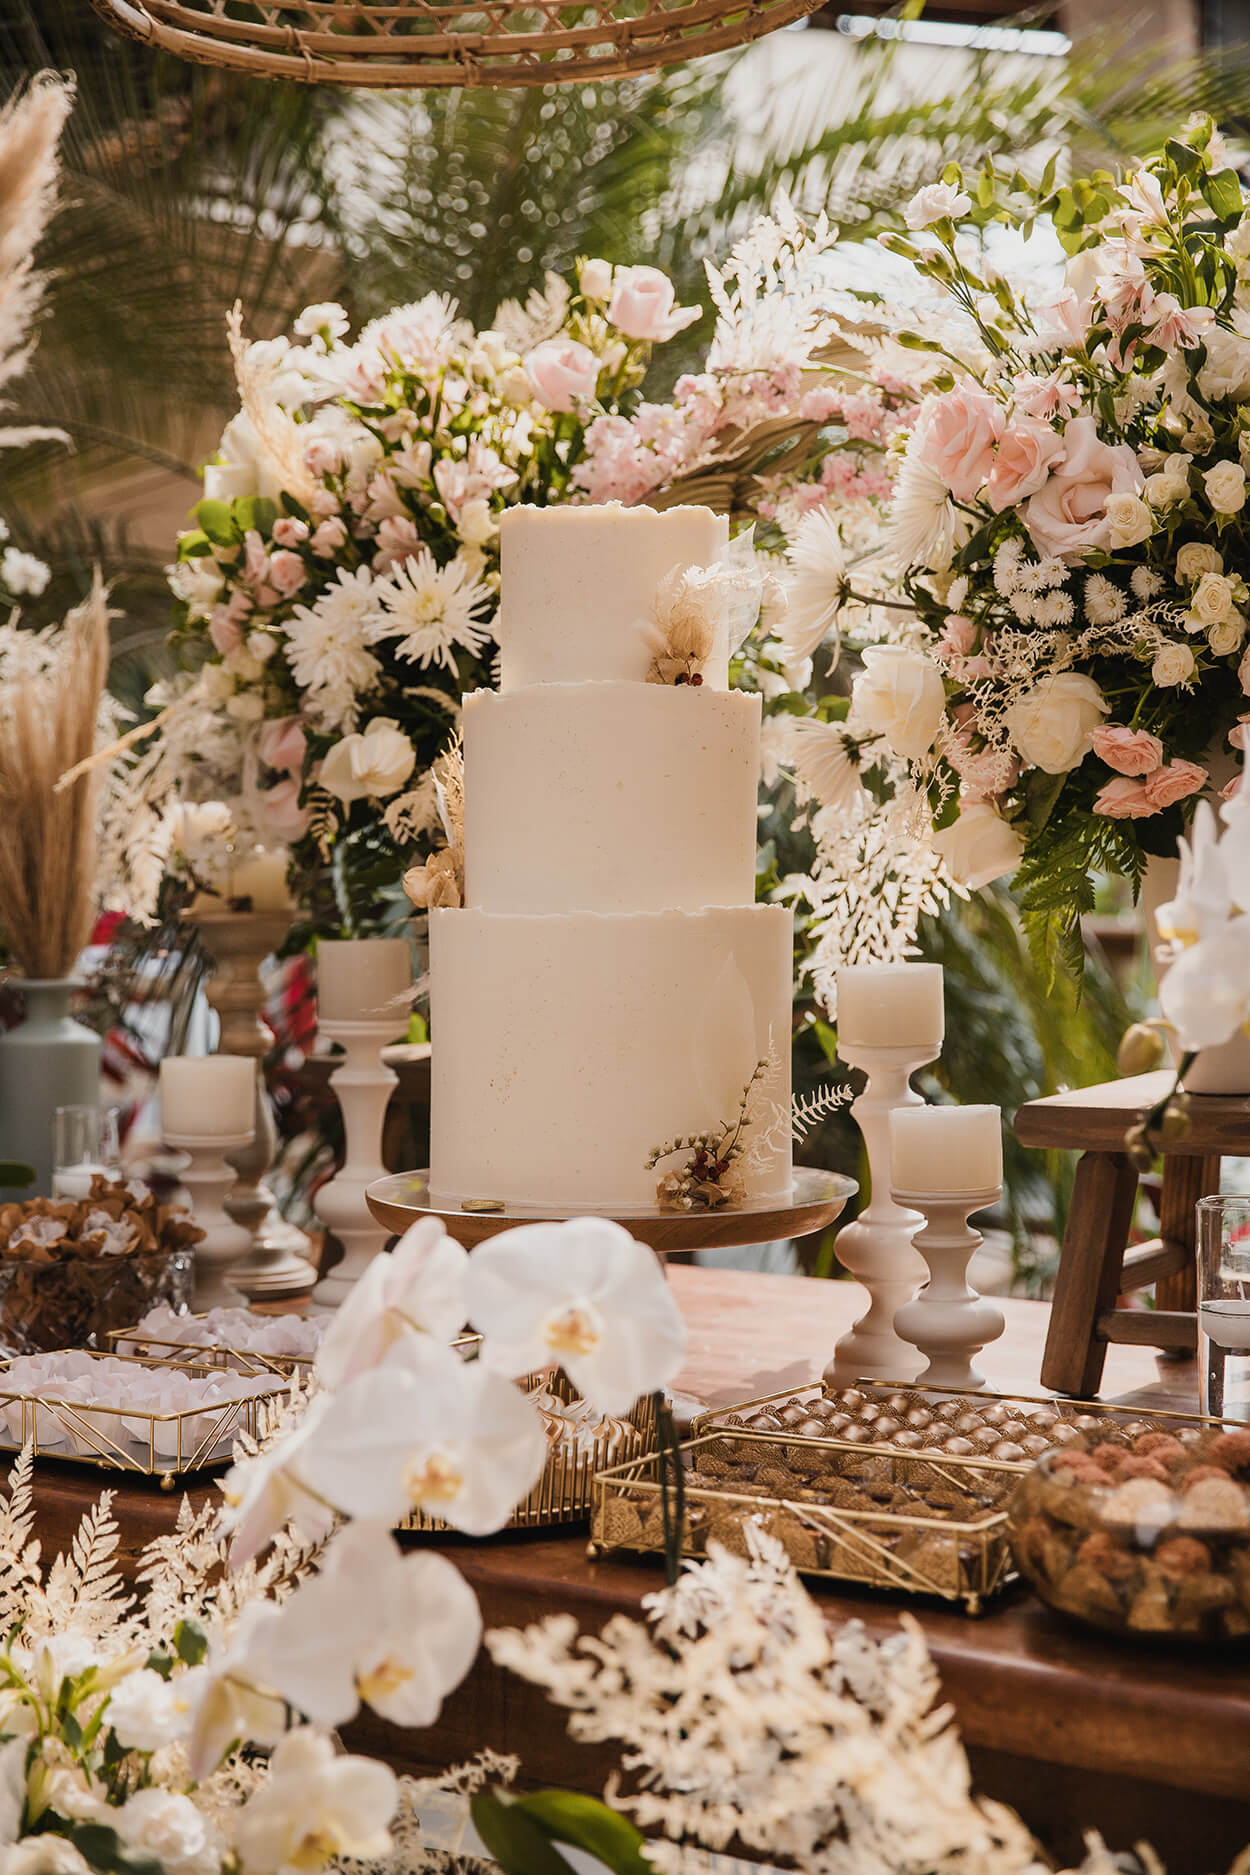 Mesa de madeira com orquídeas brancas arranjos com rosas e bolo de casamento branco redondo com três andares